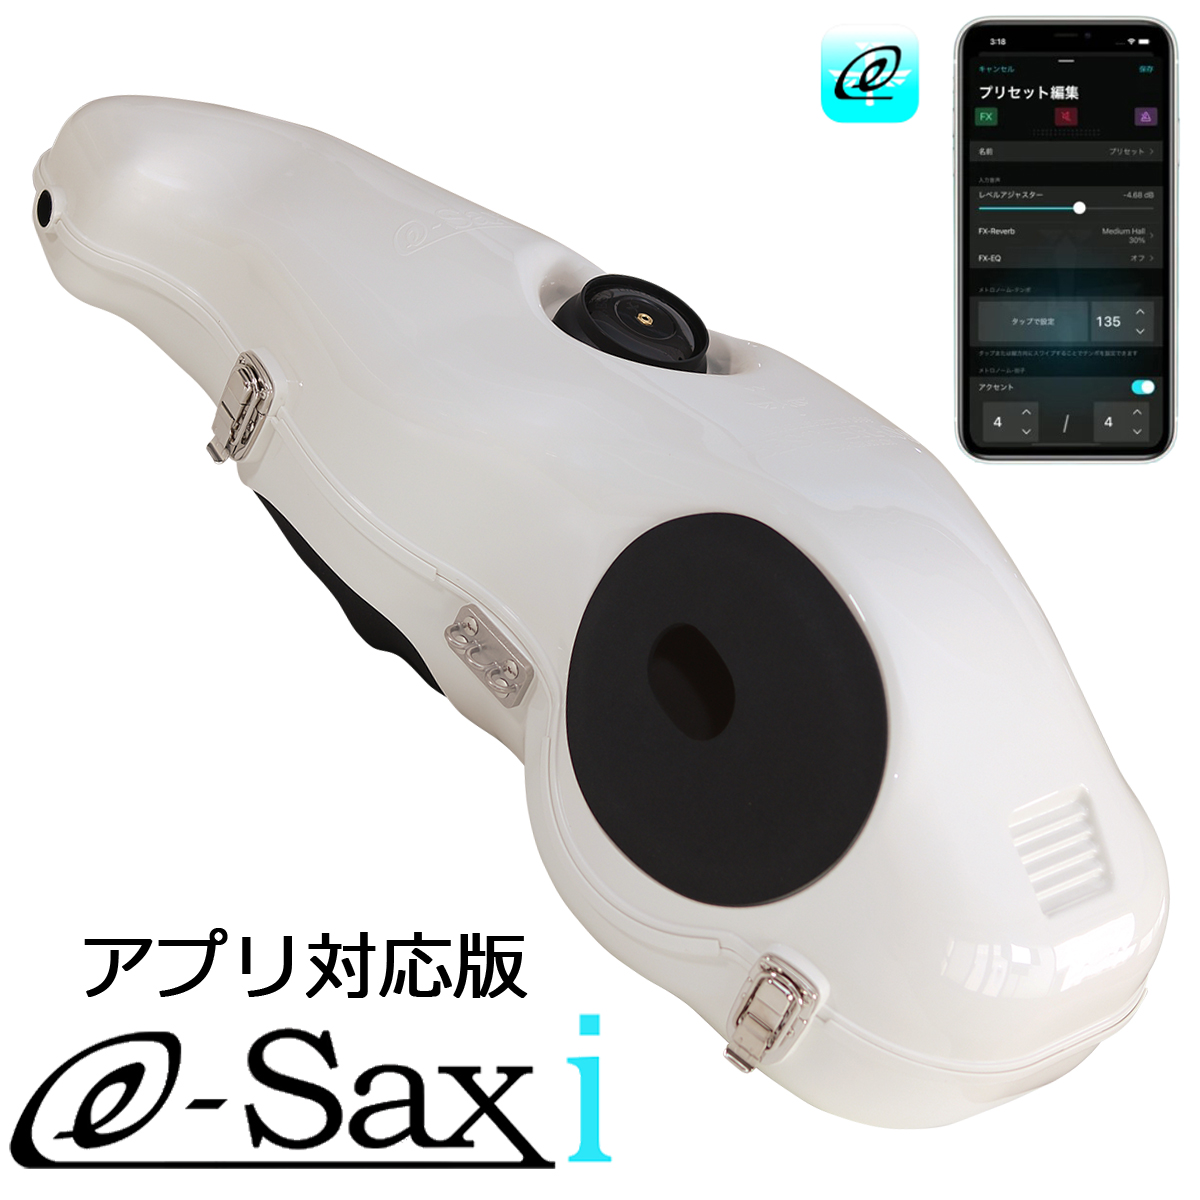 アルトサックス用消音器 ベストブラス イーサックス (e-sax)